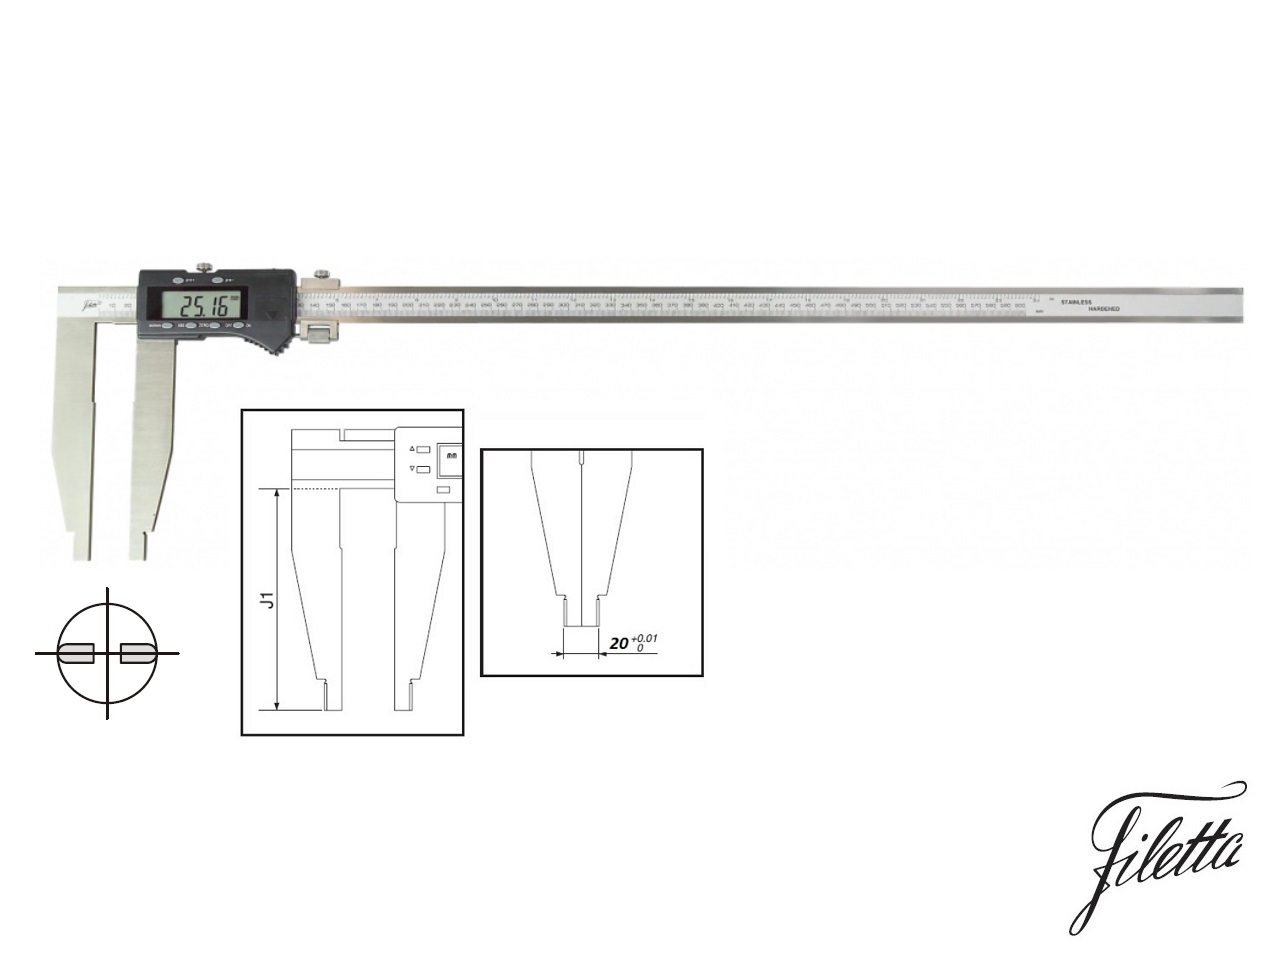 Digitální posuvné měřítko Filetta 0-600 mm  bez nožíků, s měřicími čelistmi 150 mm